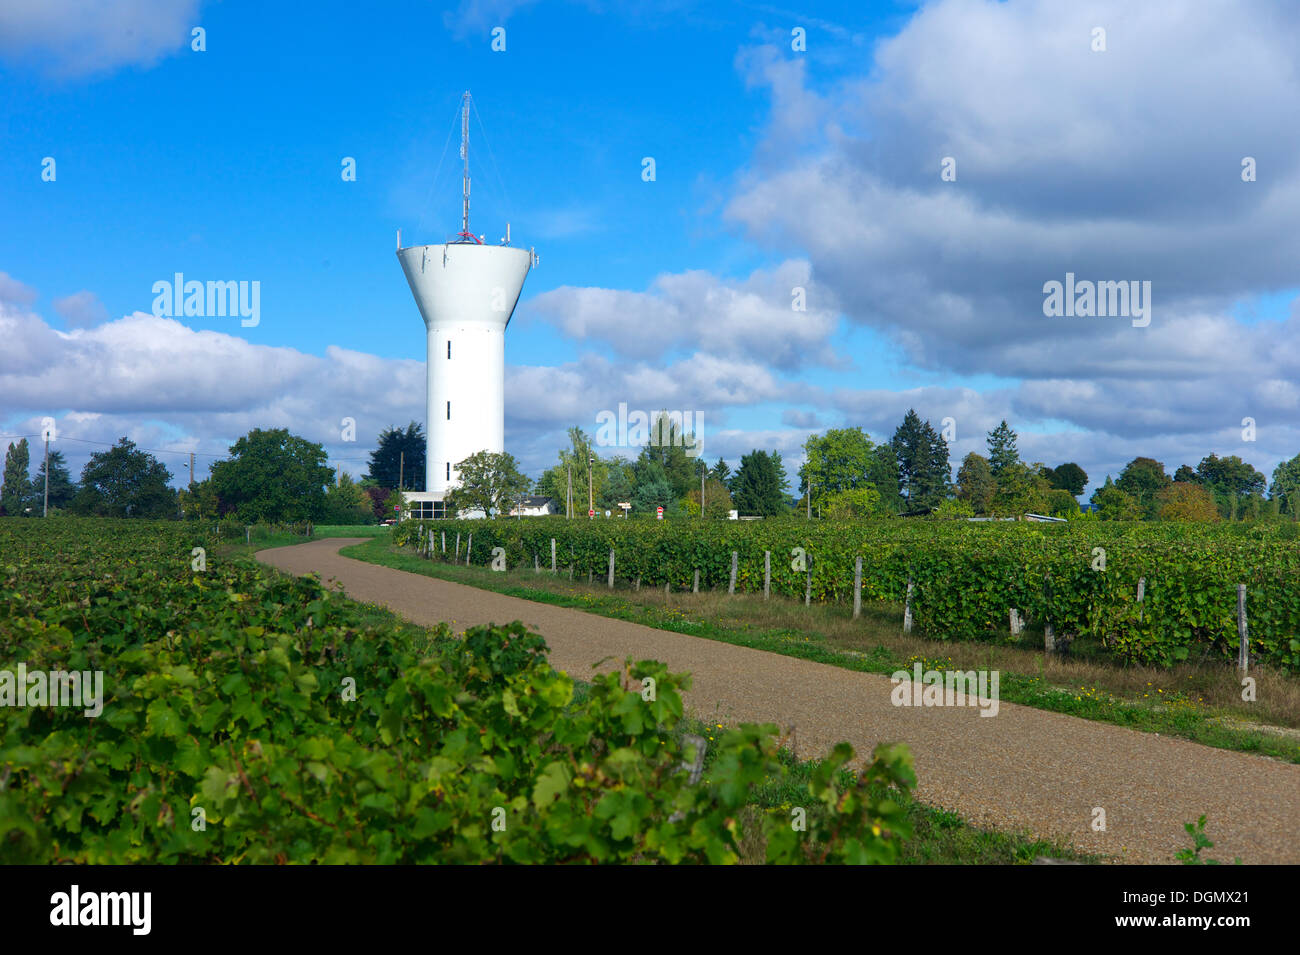 Un tour de l'eau dans un vignoble, Monlouis-sur-Loire, Indre et Loire, France Banque D'Images